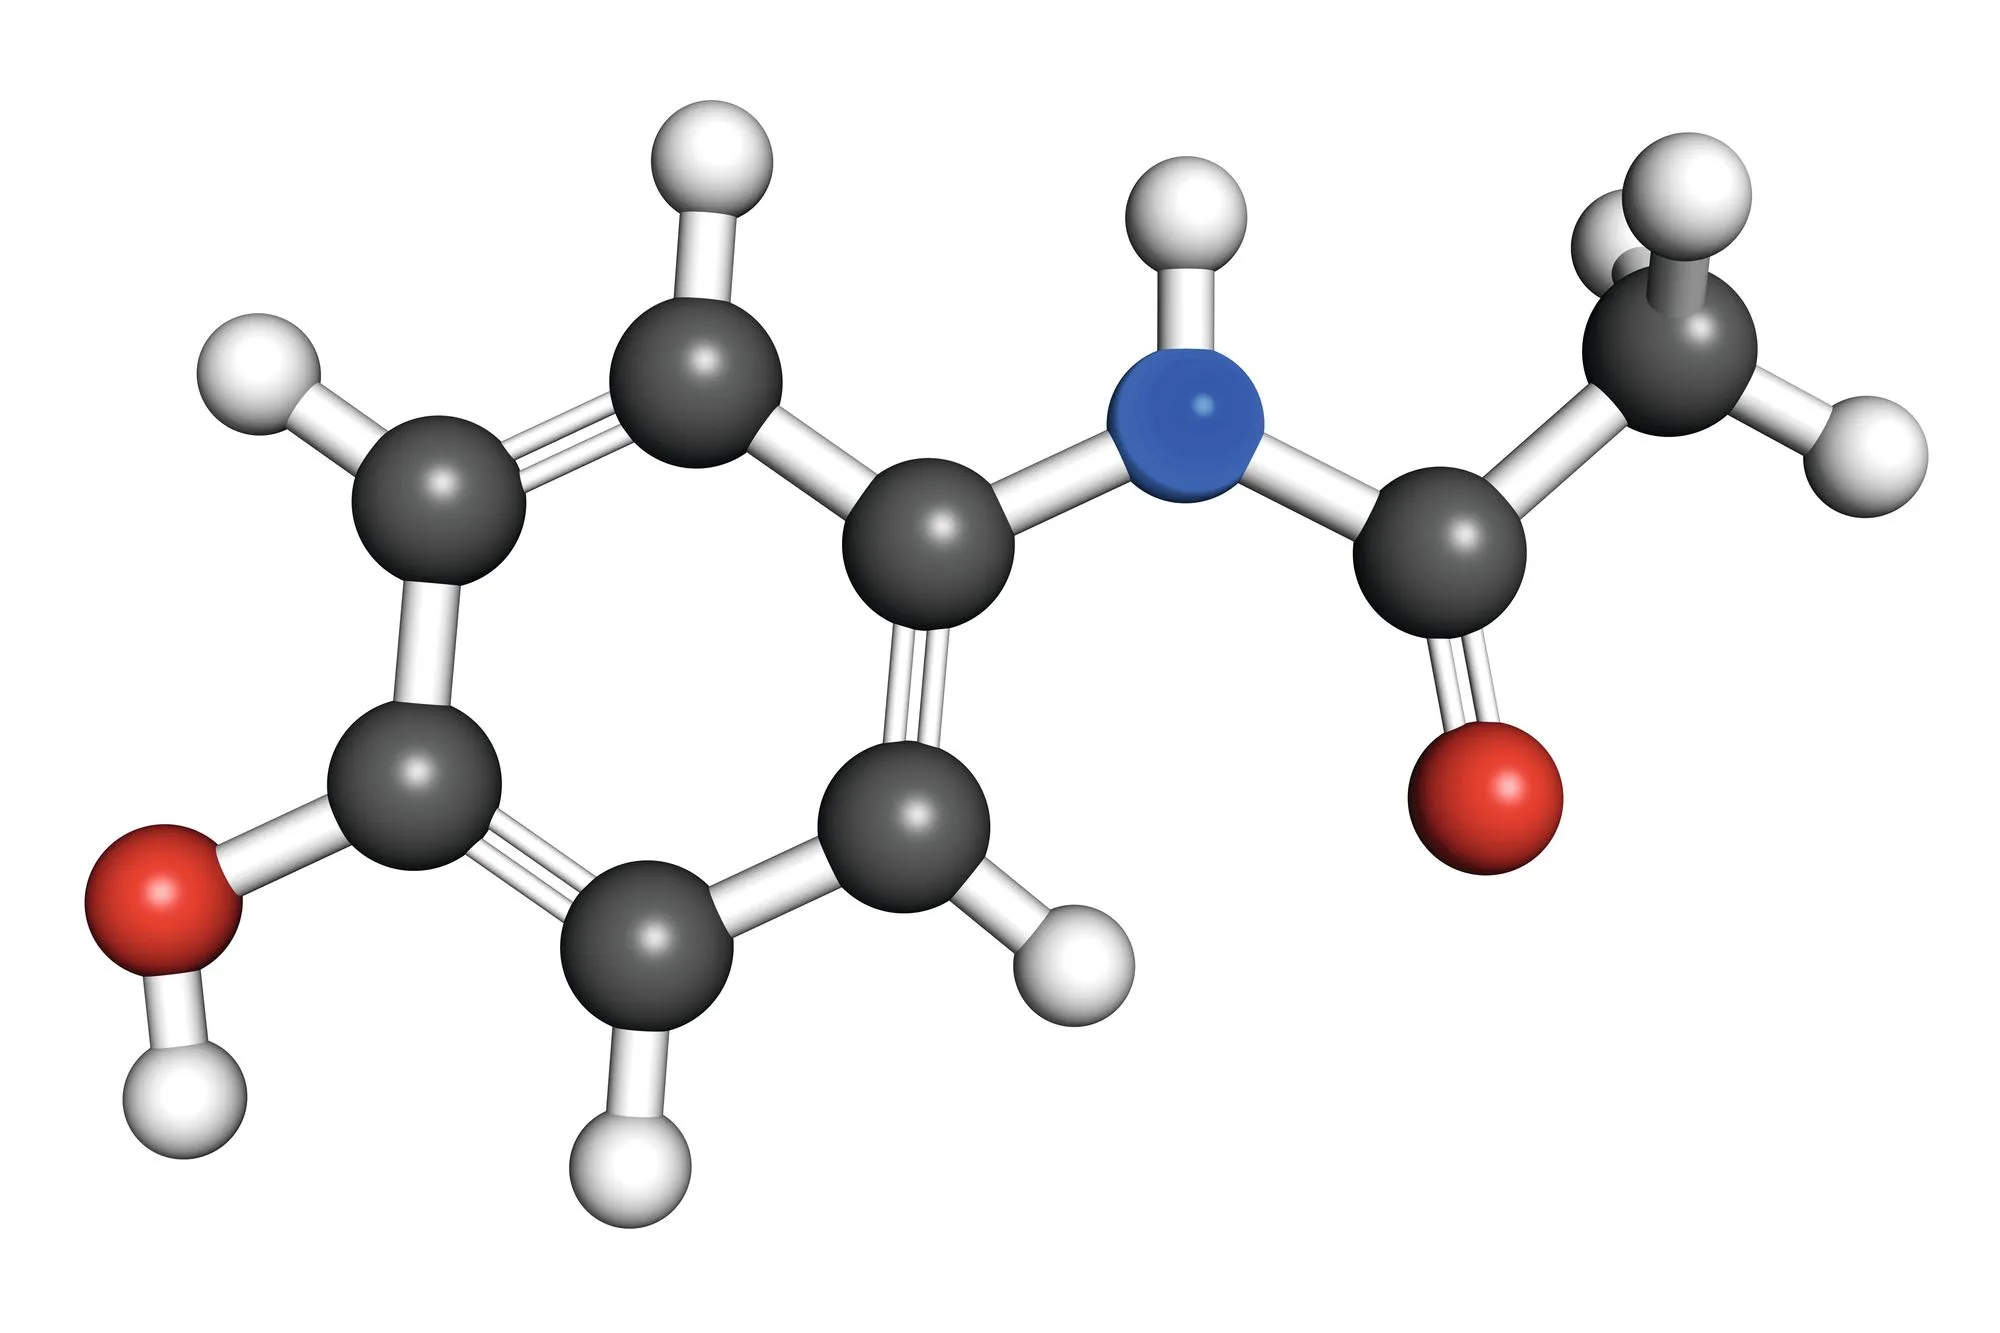 Molécule Paracetamol